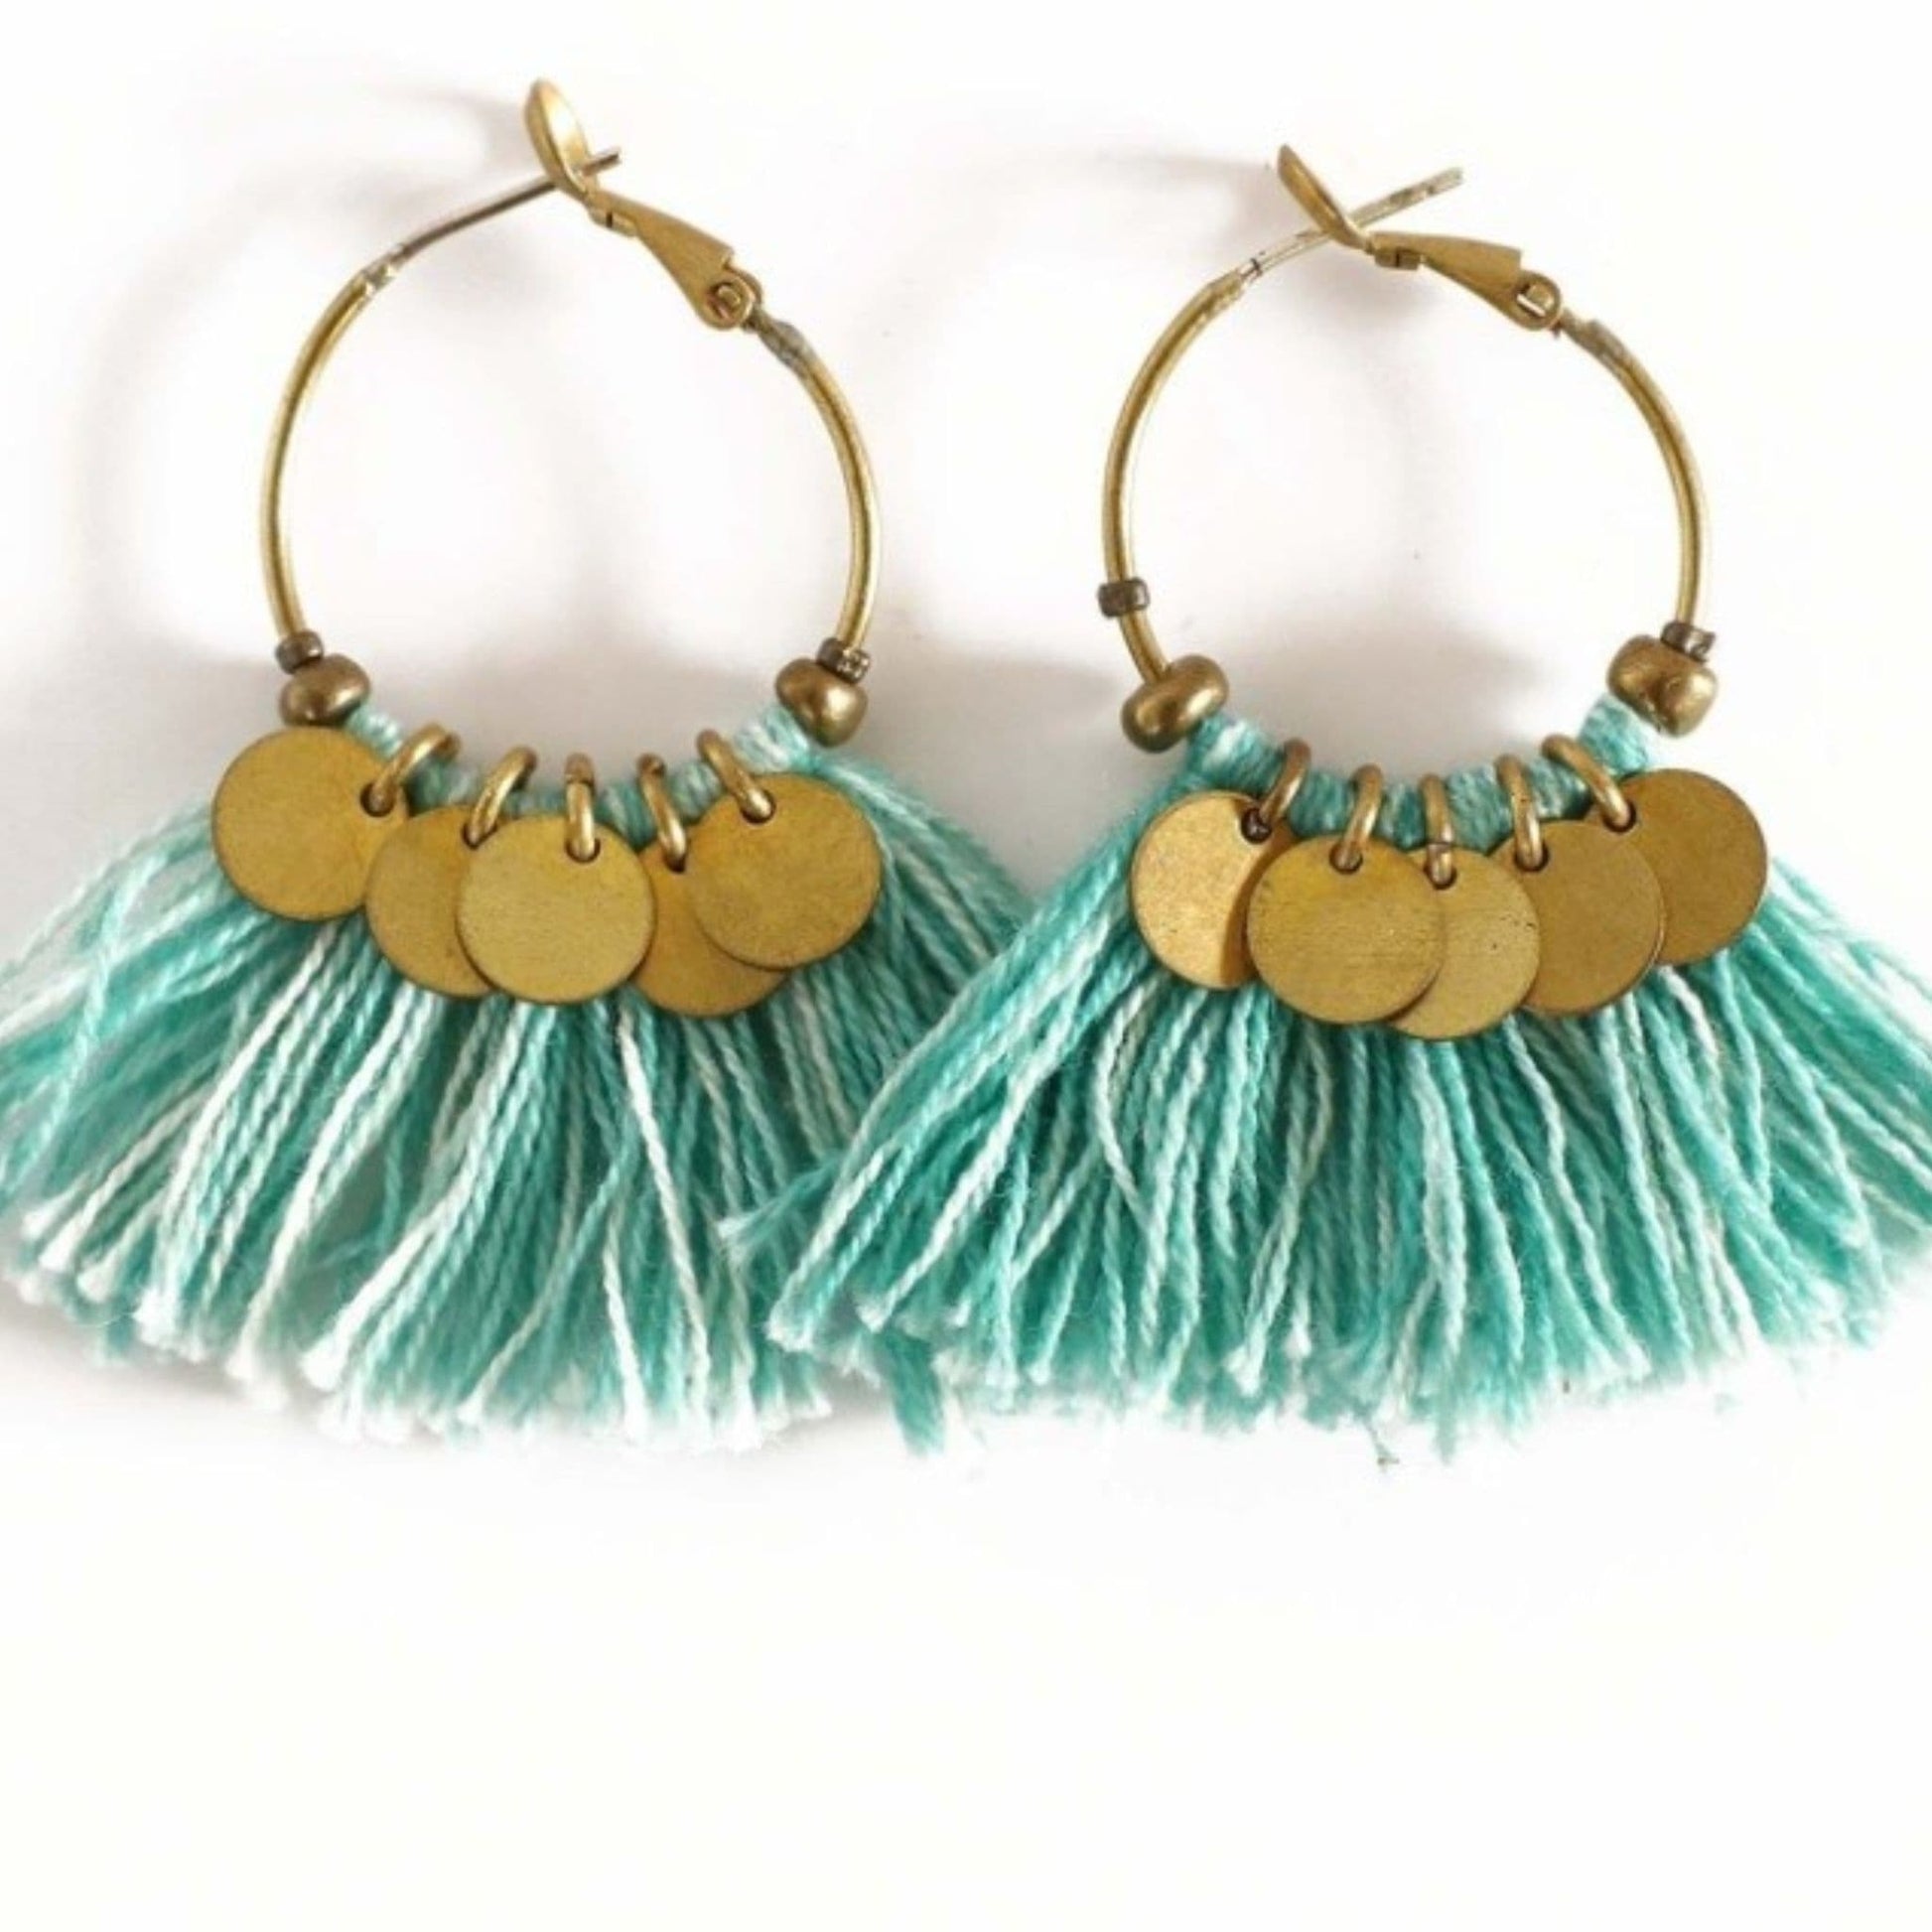 Tassel Earrings  Handmade and Fair Trade - blue tassel earrings on white background